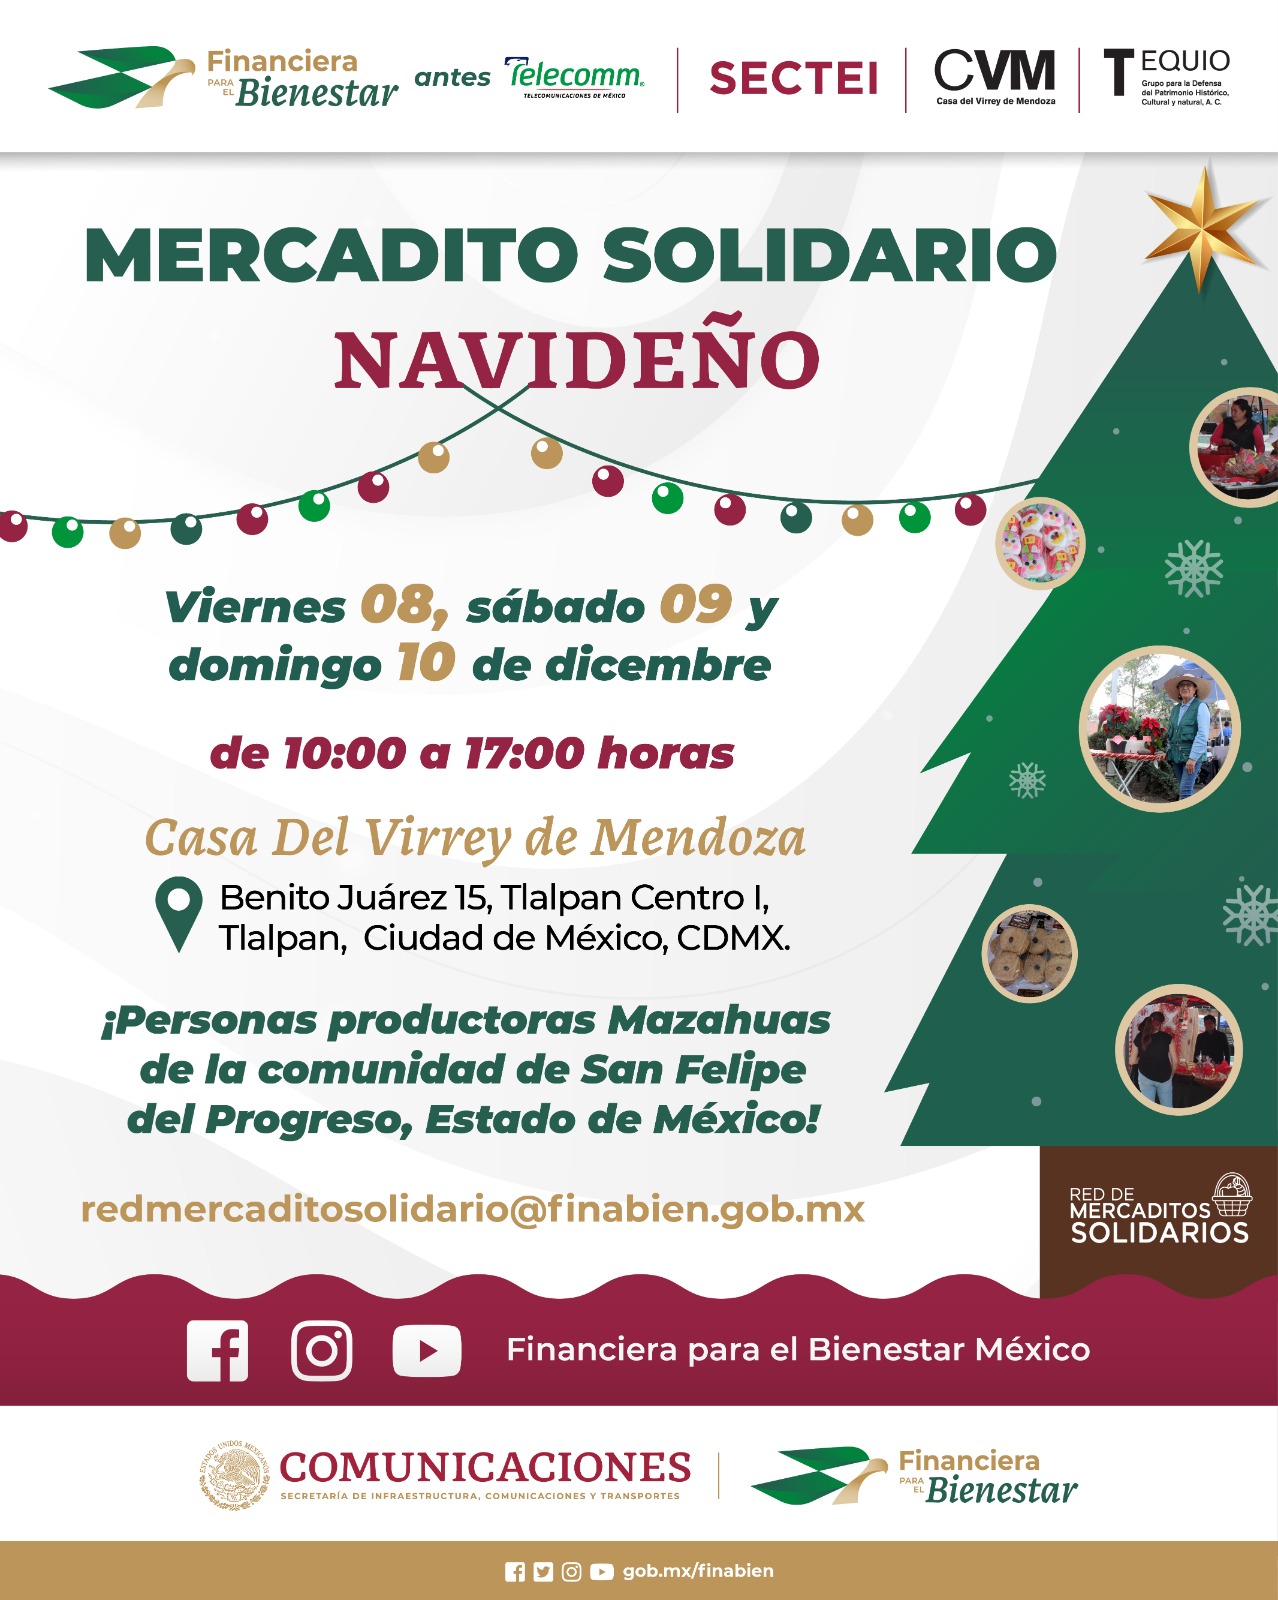 Mercadito Solidario Navideño, Casa del Virrey de Mendoza